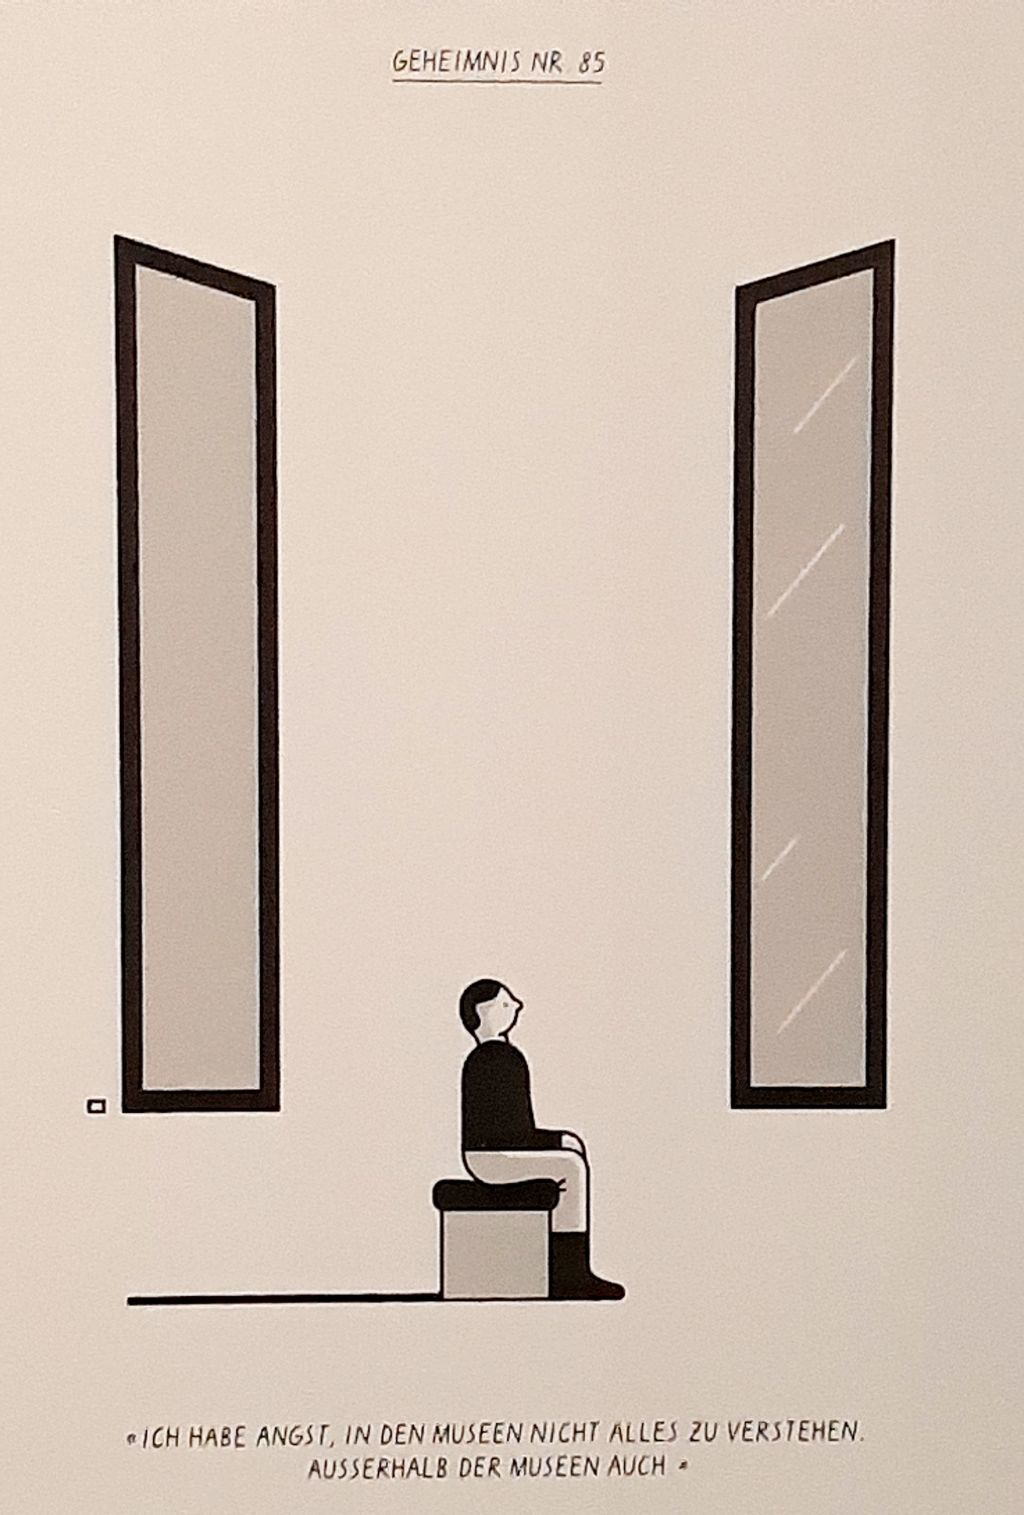 Auf dem Bild sehen wir zwei grosse Fenster. Auf einer Bank, wie man sie aus Museen kennt, sitzt ein Mann. Er schaut aus dem Fenster, so als wäre die Welt draussen ein Kunstwerk.